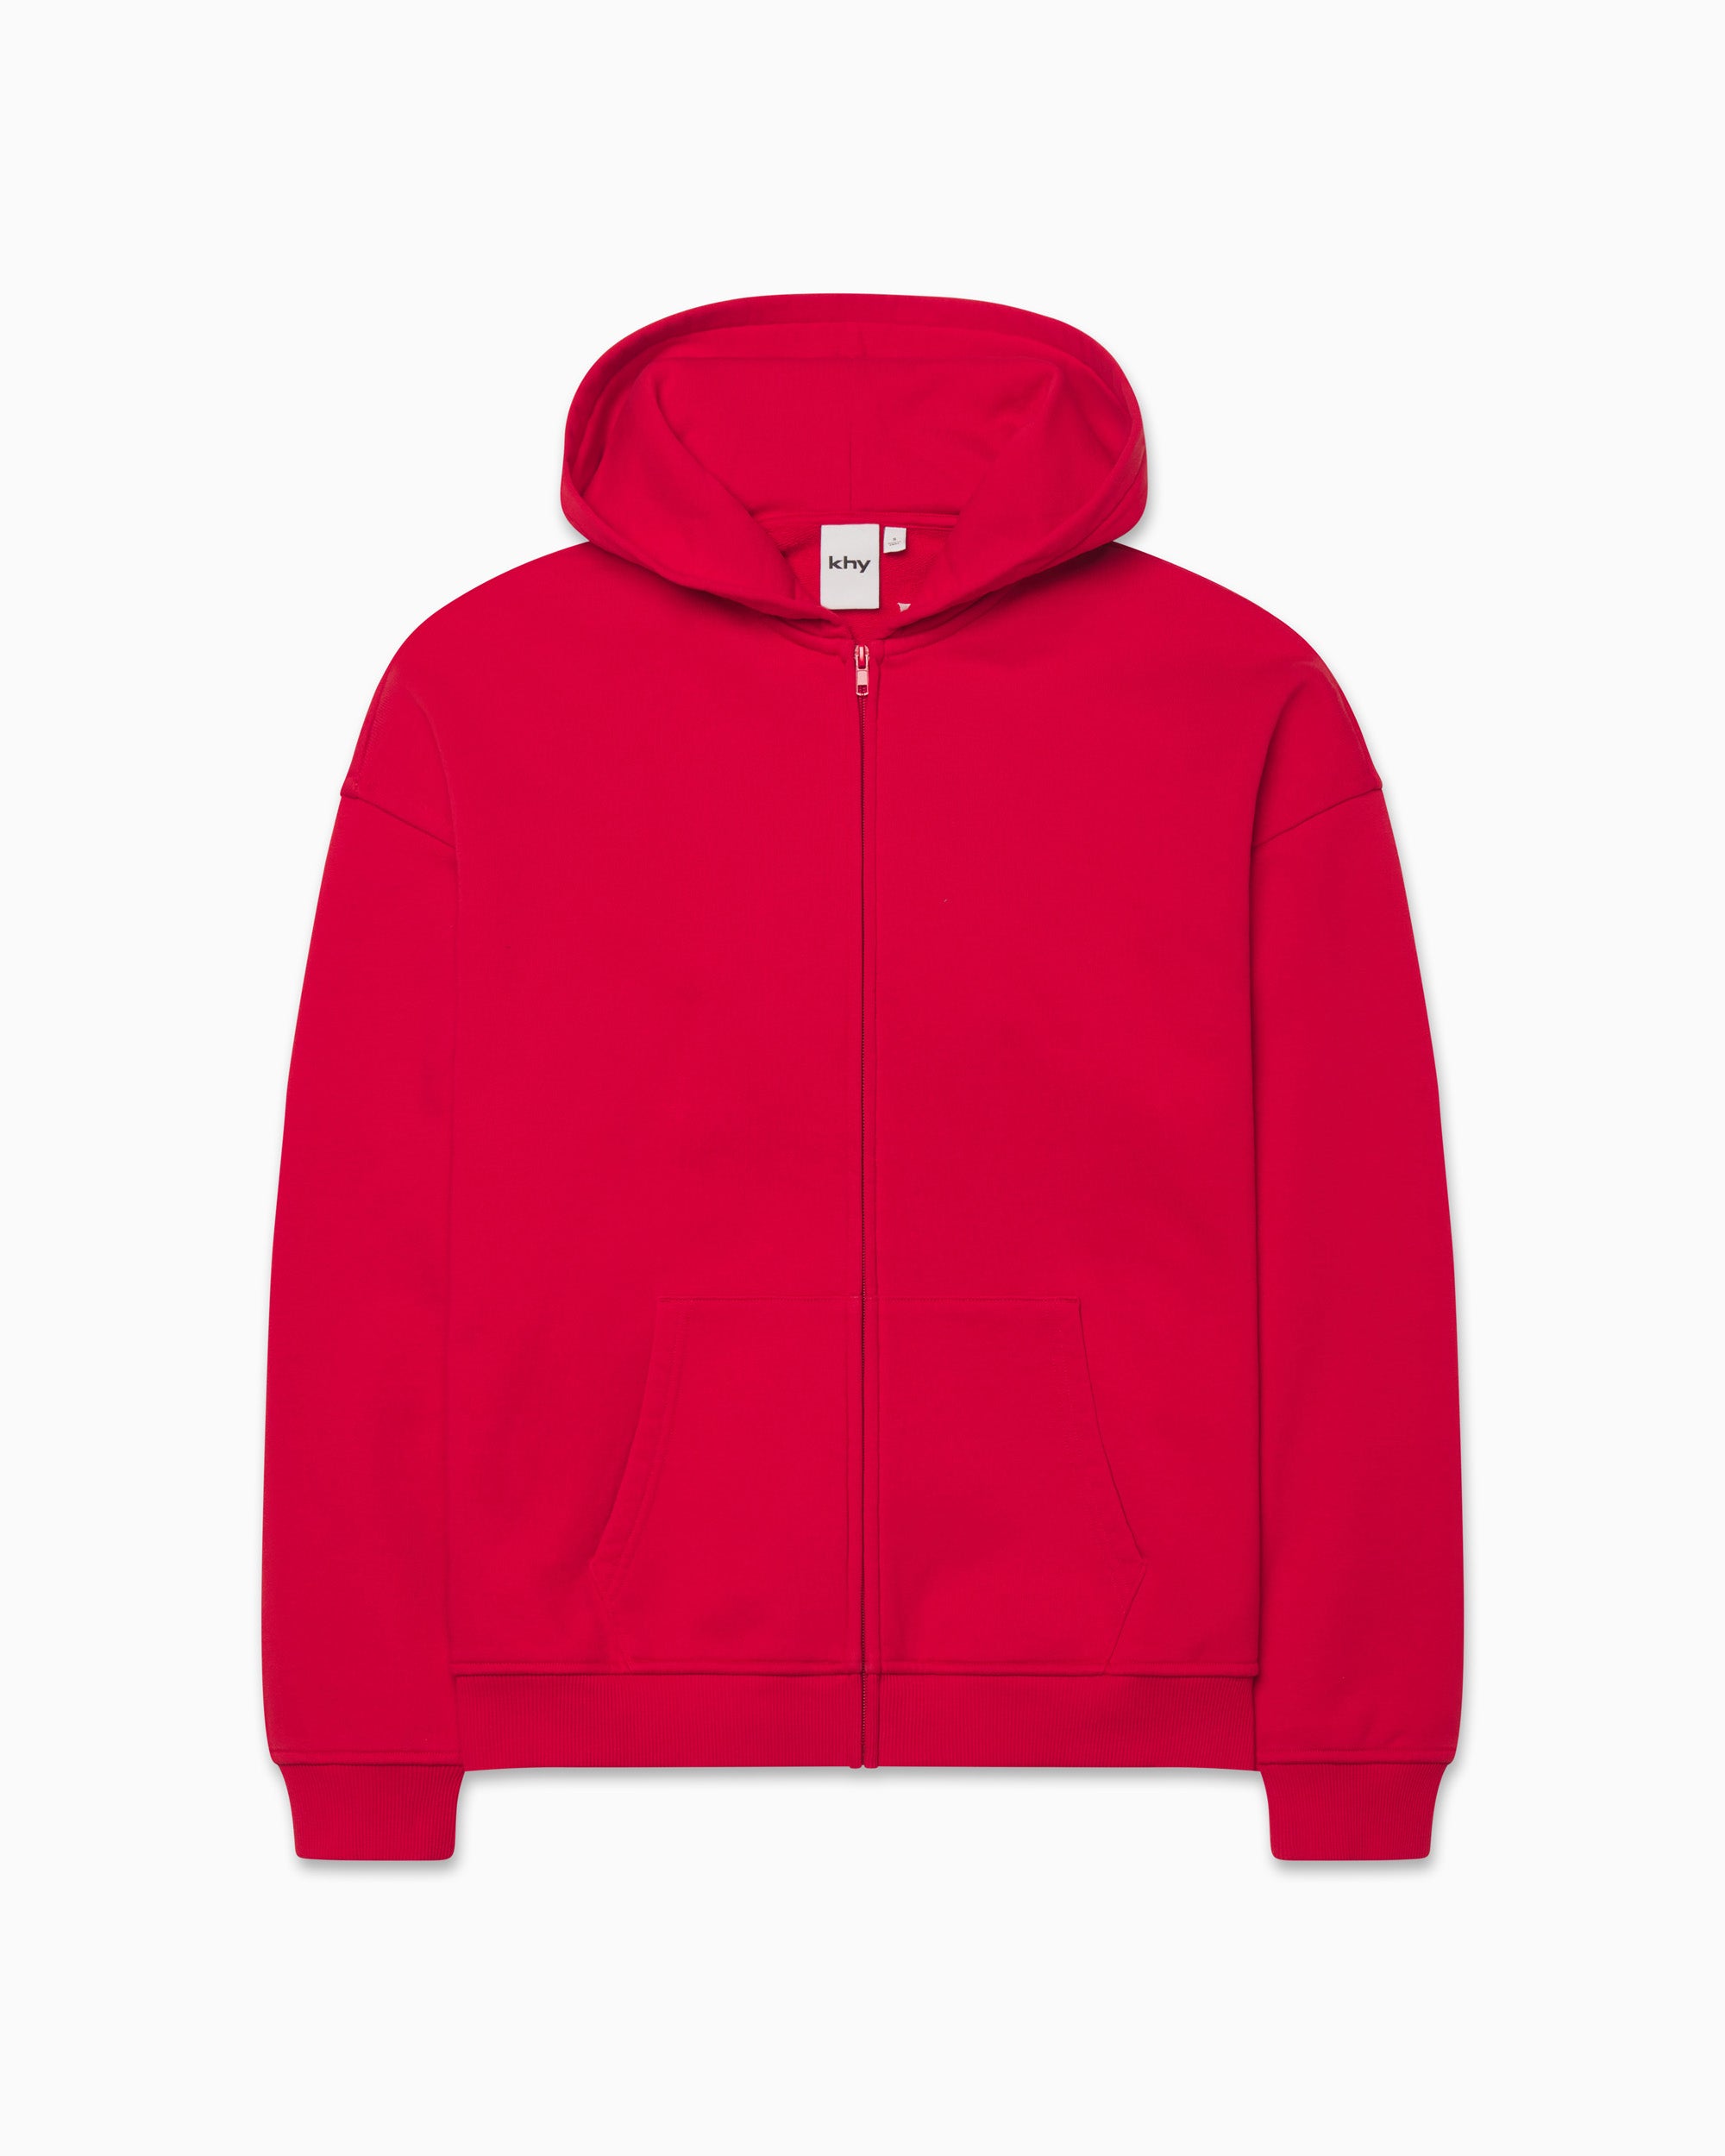 Oversized zip-up fleece hoodie